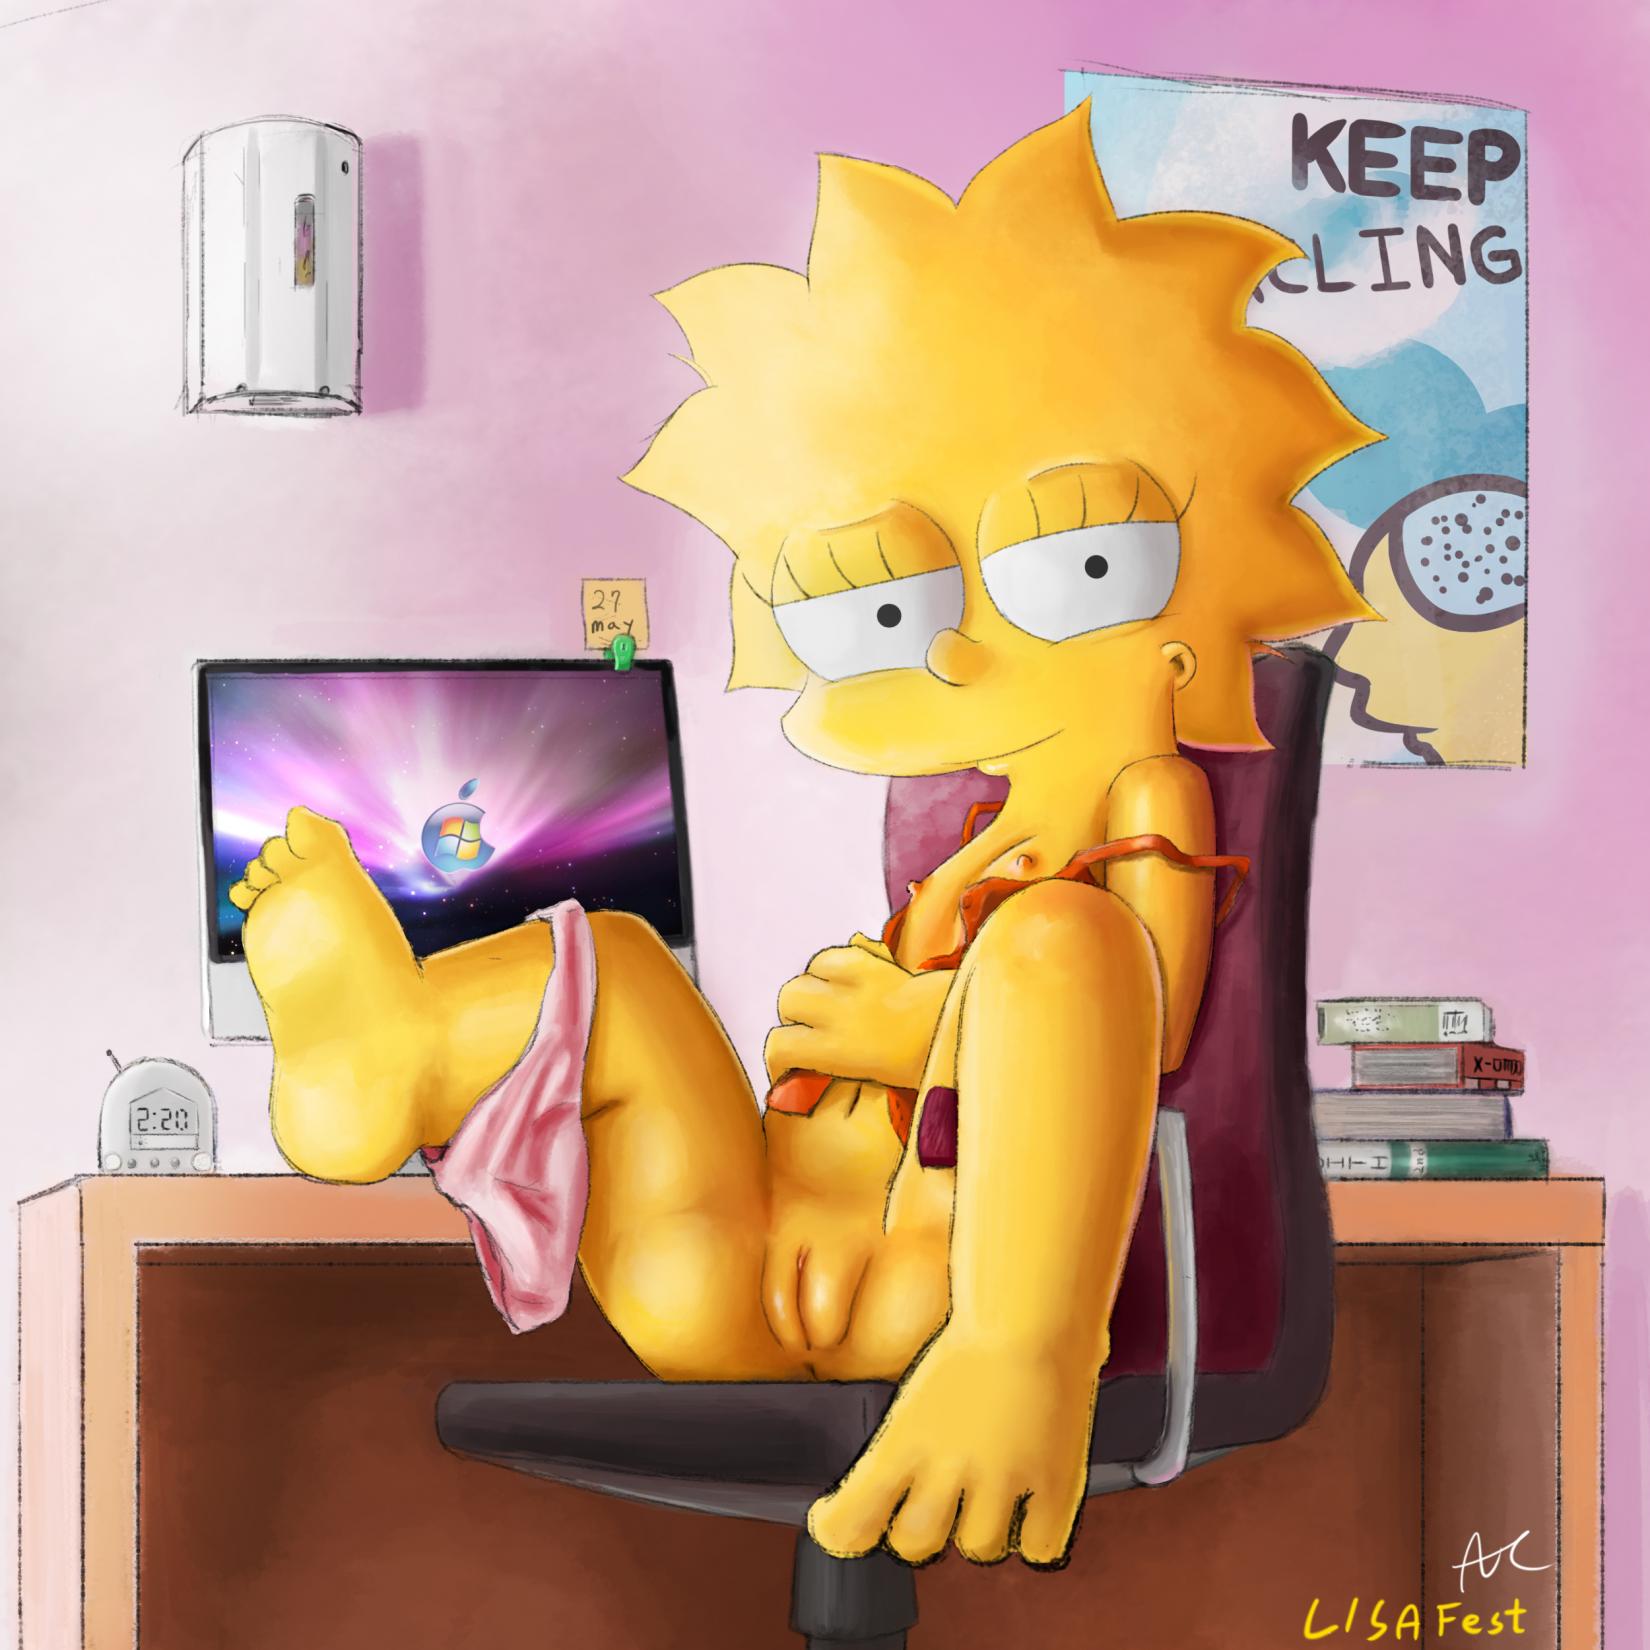 Pic1112719 Ahbihamo Lisa Simpson The Simpsons Simpsons Adult Comics